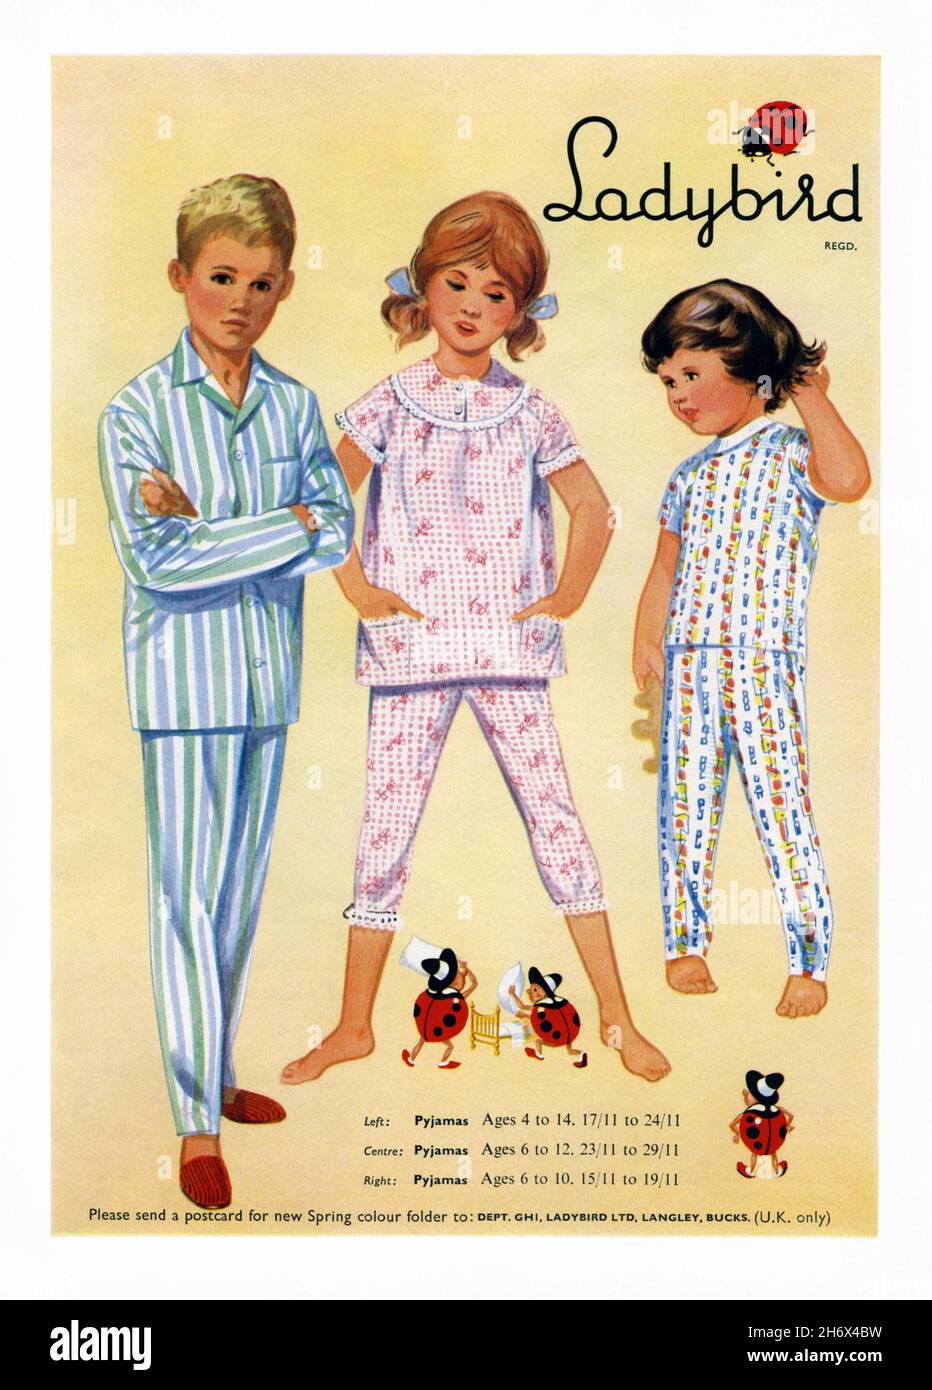 Eine Anzeige von 1960s für Ladybird-Kindersabowear. Die Anzeige erschien in einer Zeitschrift, die im März 1965 in Großbritannien veröffentlicht wurde. Die Abbildung zeigt Nachtkleidung für Jungen und Mädchen. Ladybird ist eine der bekanntesten Kinderbekleidungsmarken des Vereinigten Königreichs und blickt auf eine lange Geschichte zurück, die bis ins 18th. Jahrhundert zurückreicht. Der Name Ladybird-Kleidung erschien erstmals 1938 und stellt Kleidung und Schuhe für Kinder bis zu den frühen Teenagern herbei. Und befindet sich heute im Besitz der Very Group, dem größten Online-Händler in Großbritannien – Vintage 1960s-Grafiken für die redaktionelle Verwendung. Stockfoto